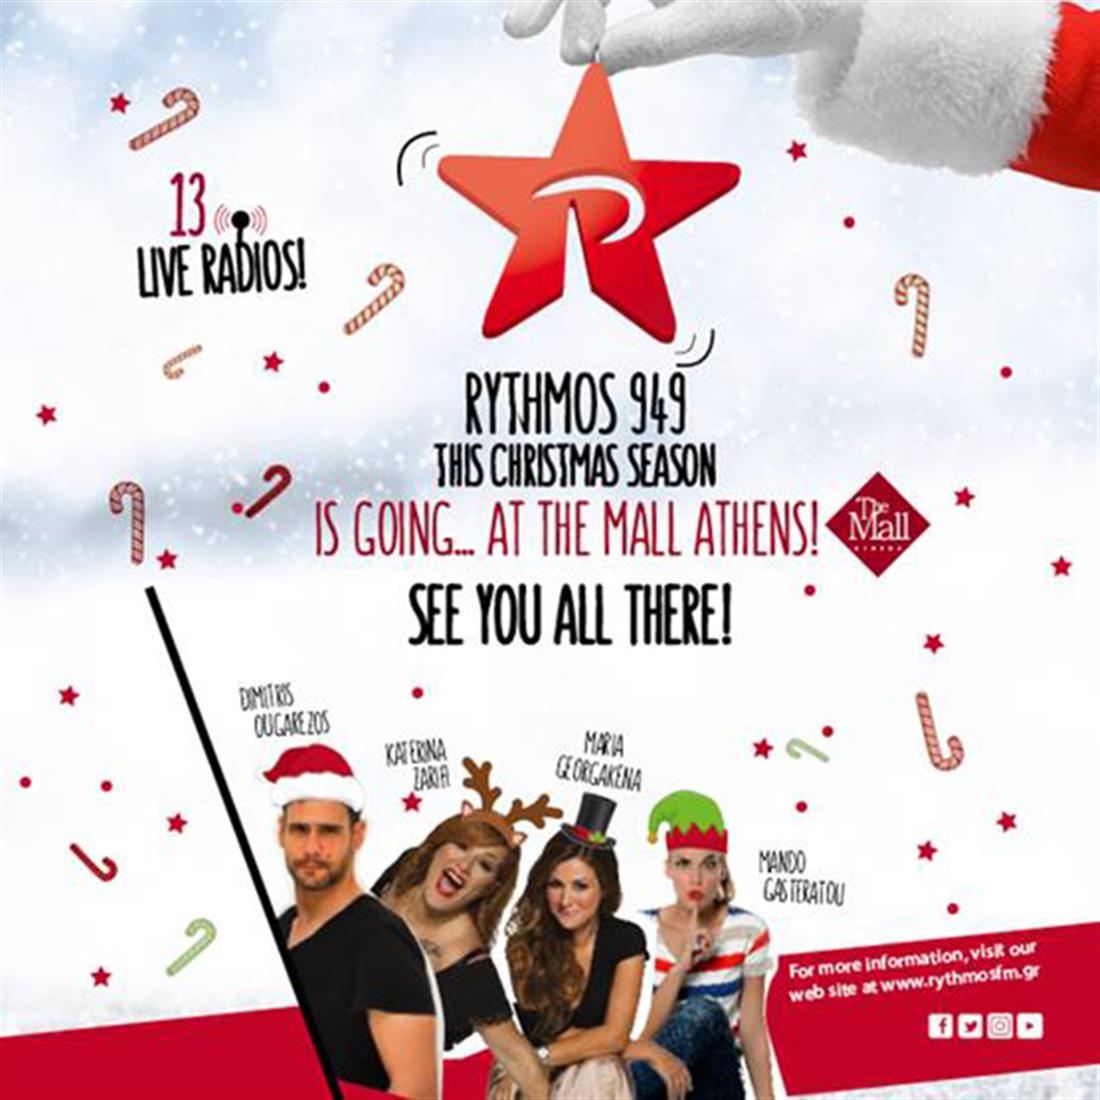 Rythmos - The Mall Athens